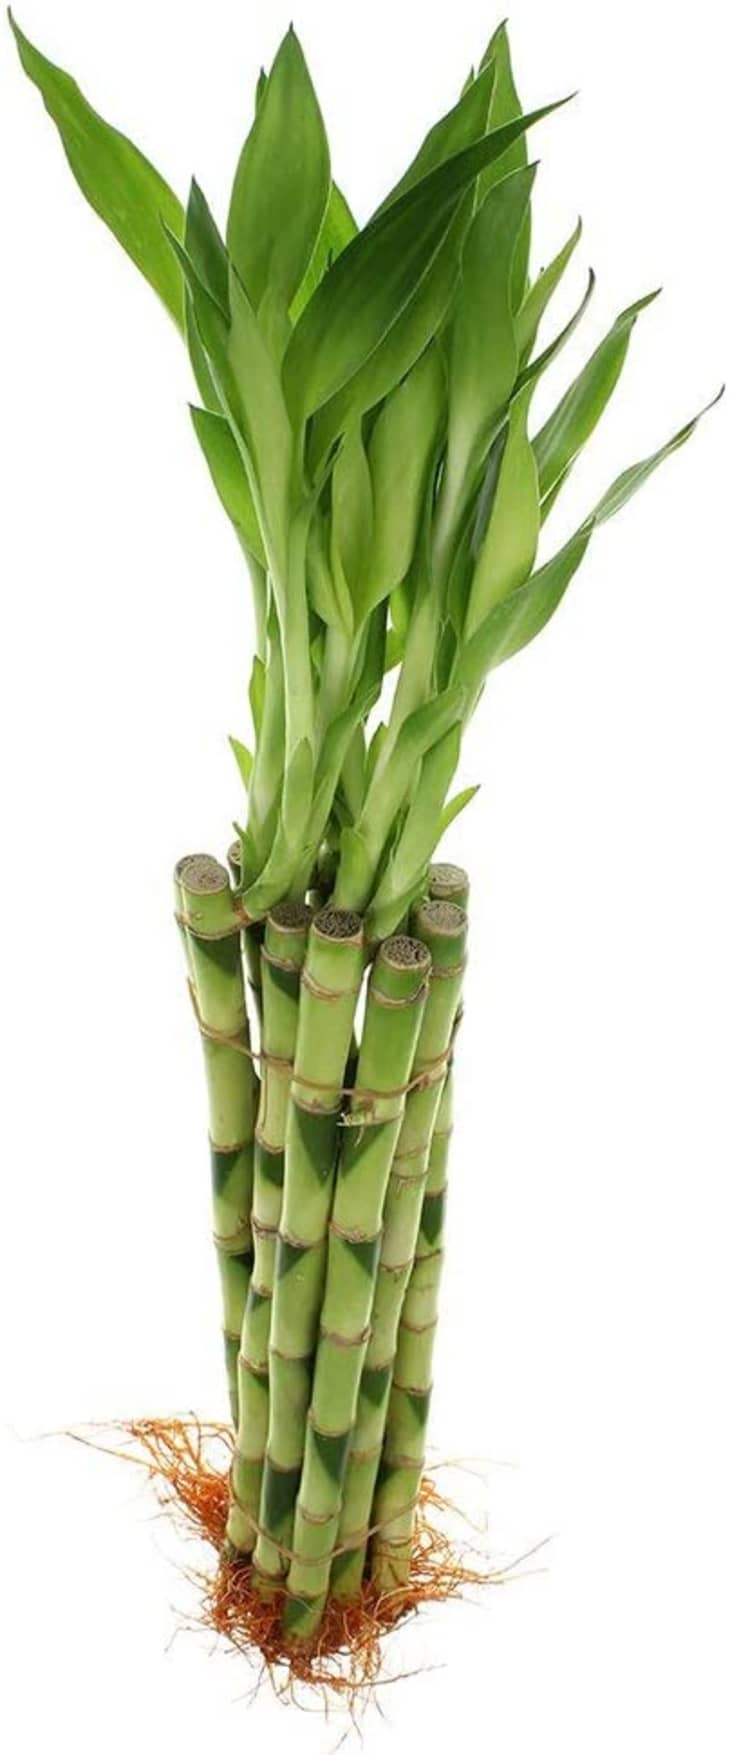 产品形象:更好的装饰幸运竹，10根12英寸的茎